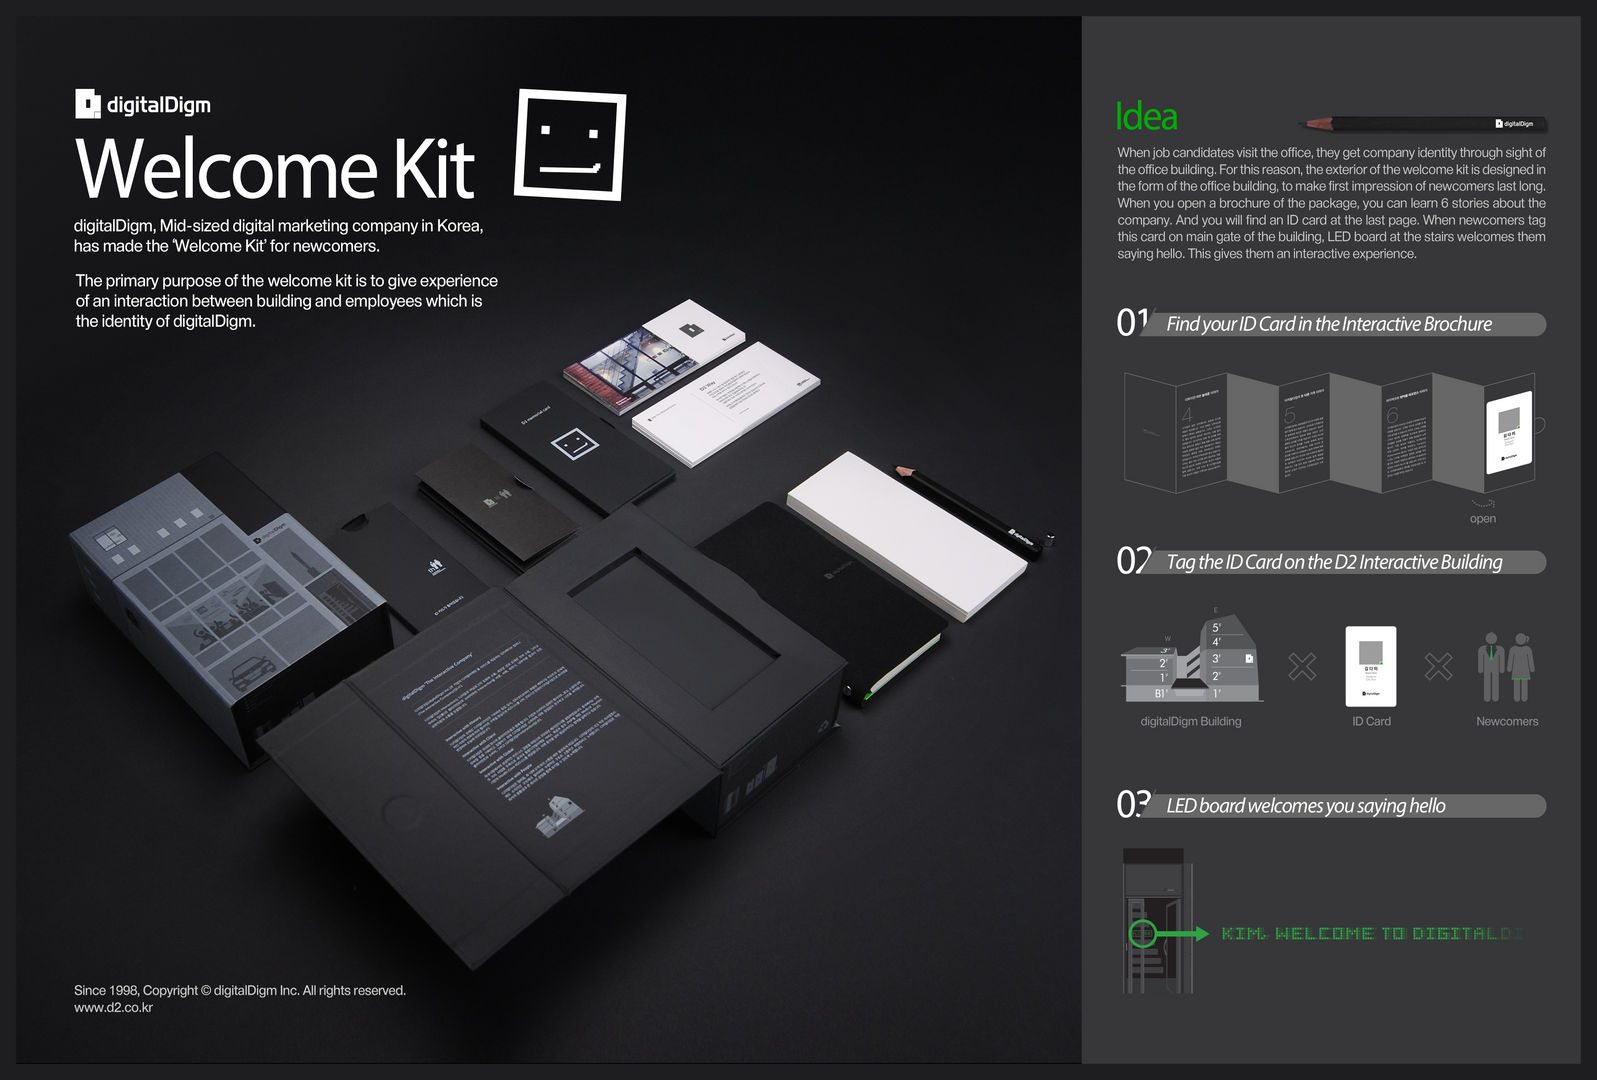 digitalDigm's Welcome Kit